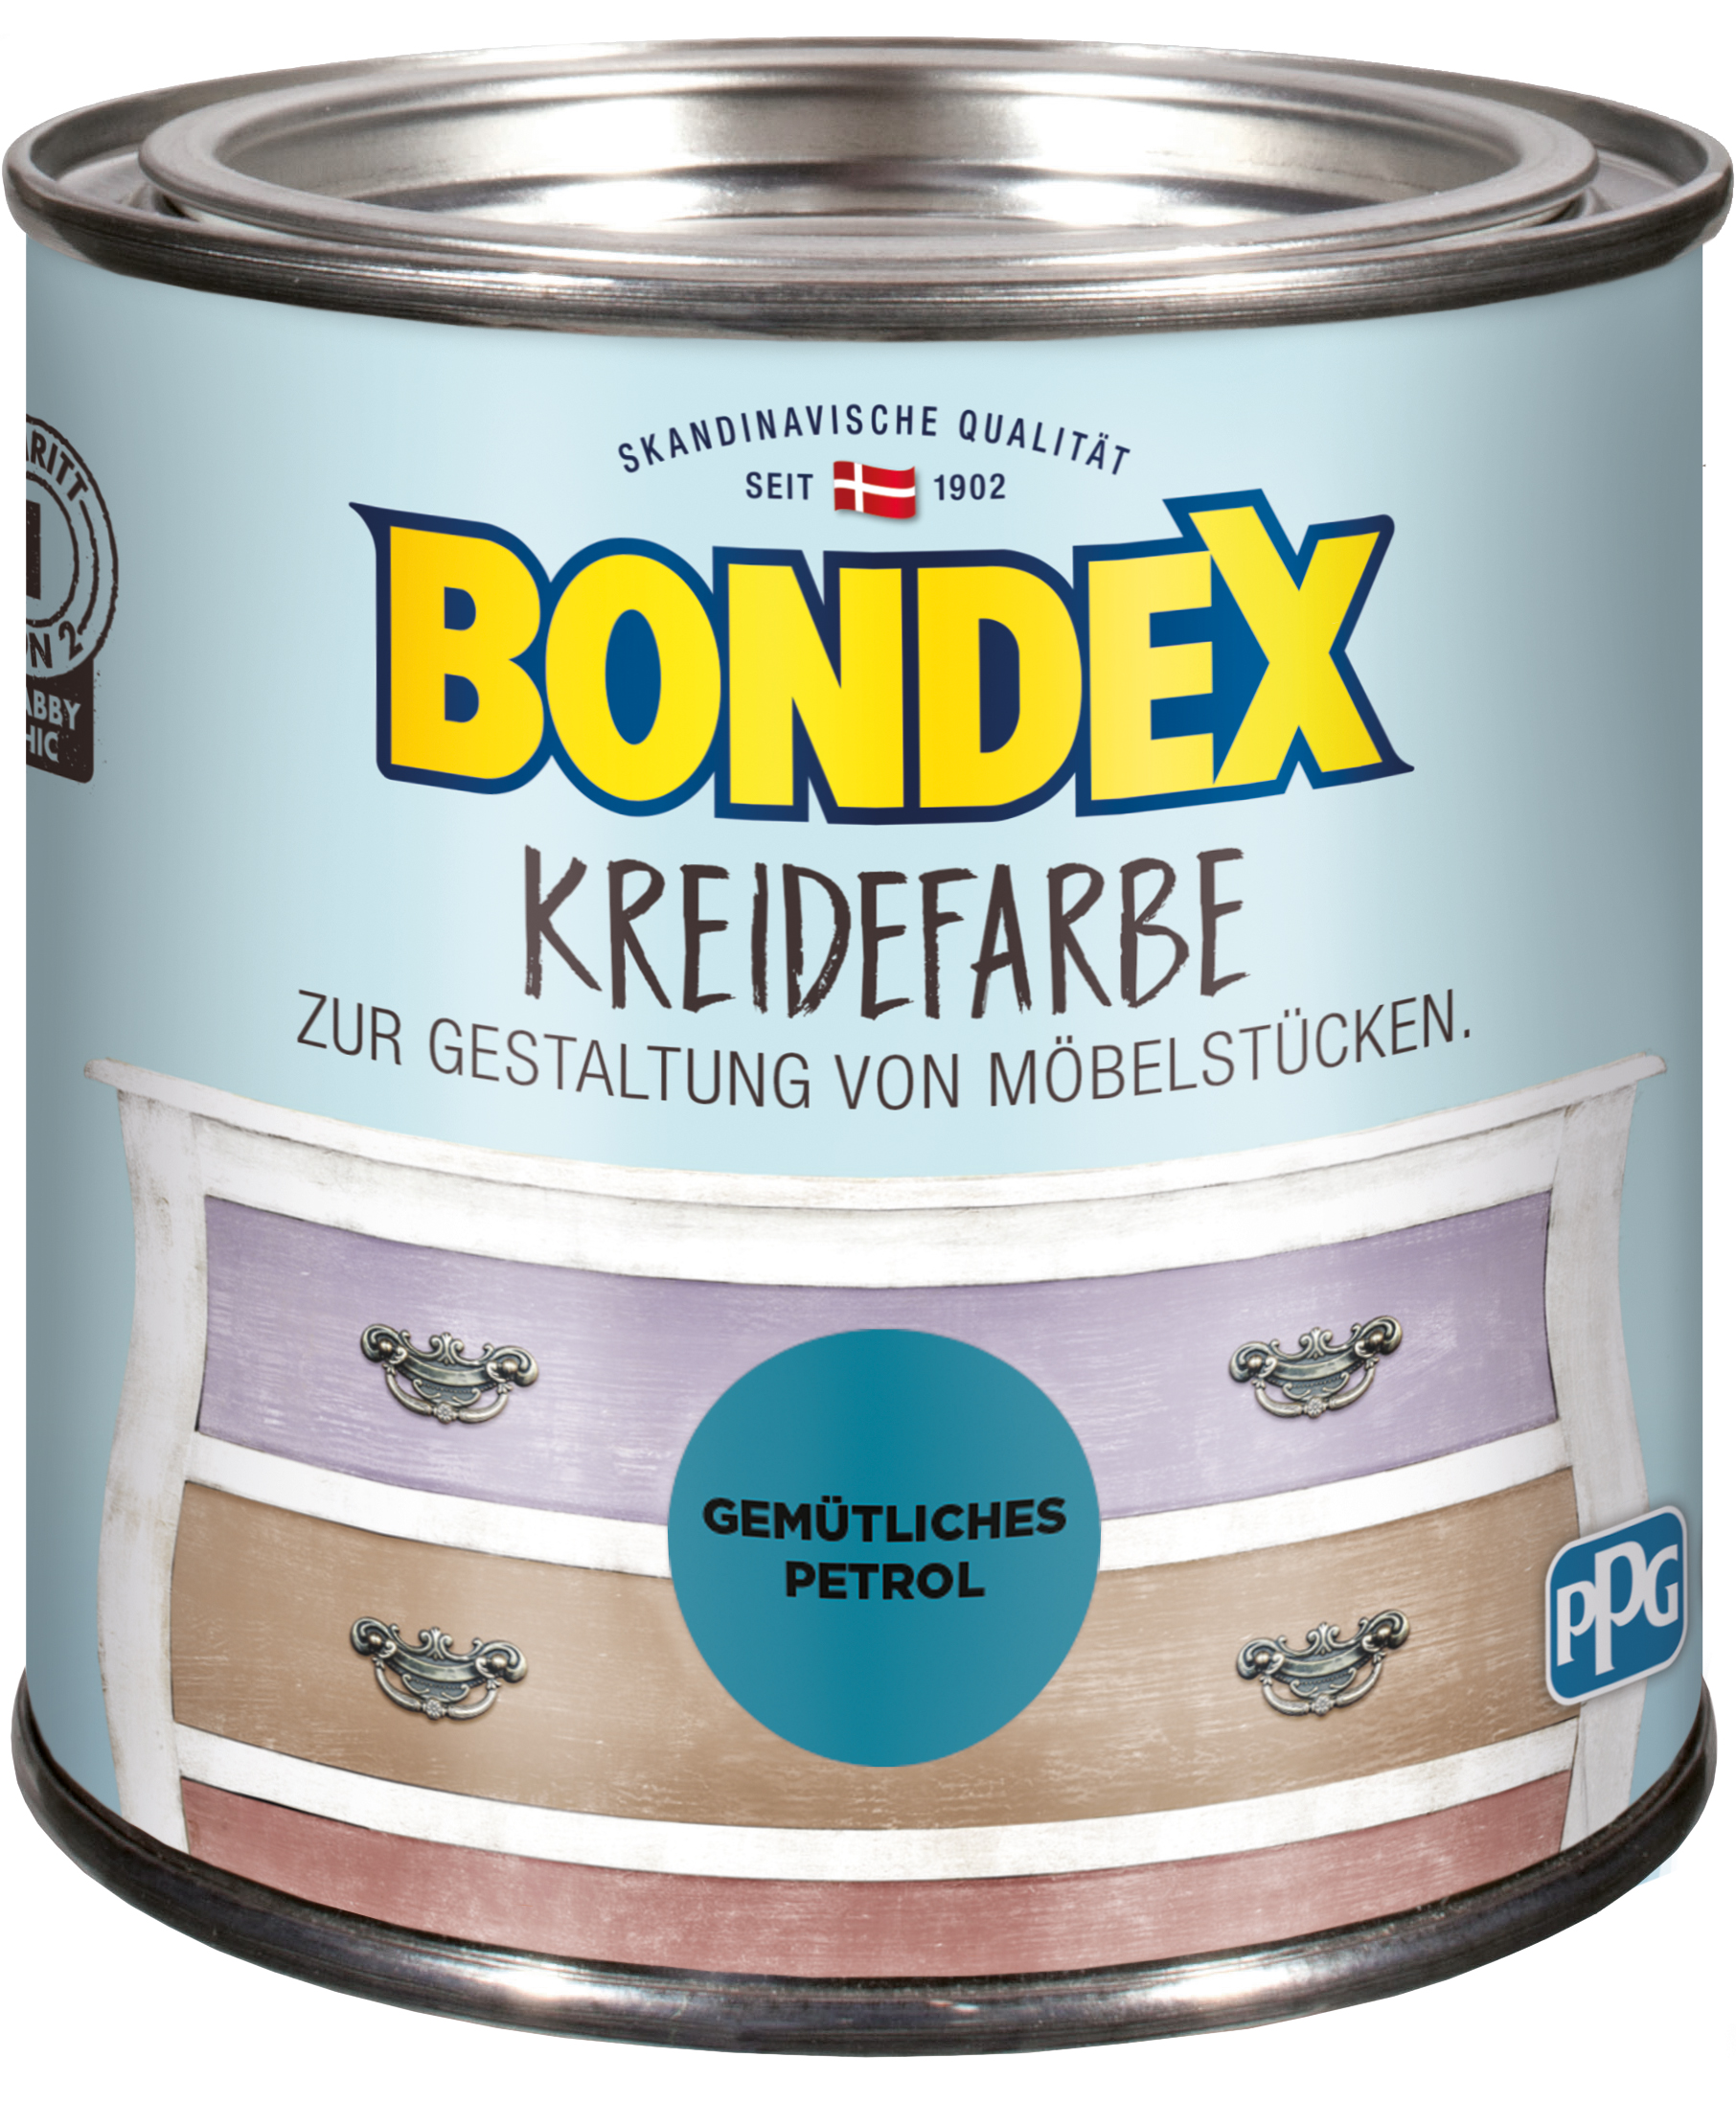 Bondex Kreidefarbe Gemütliches Petrol, 0,5L